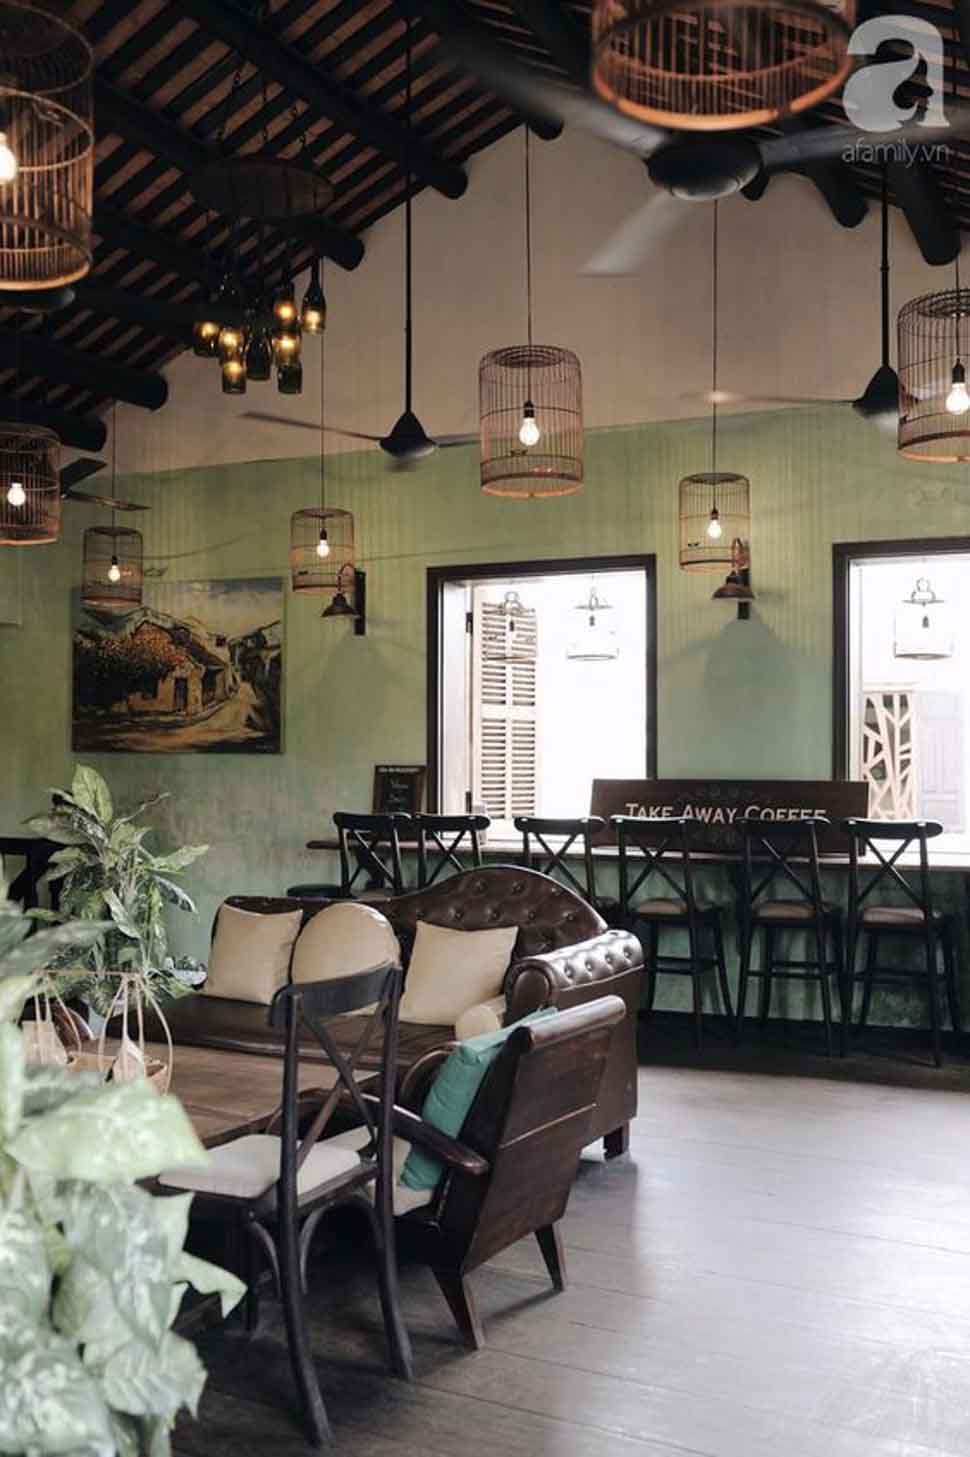 Quán cafe được thiết kế theo phong cách cổ điển phương Đông gợi cảm giác hoài niệm và gần gũi